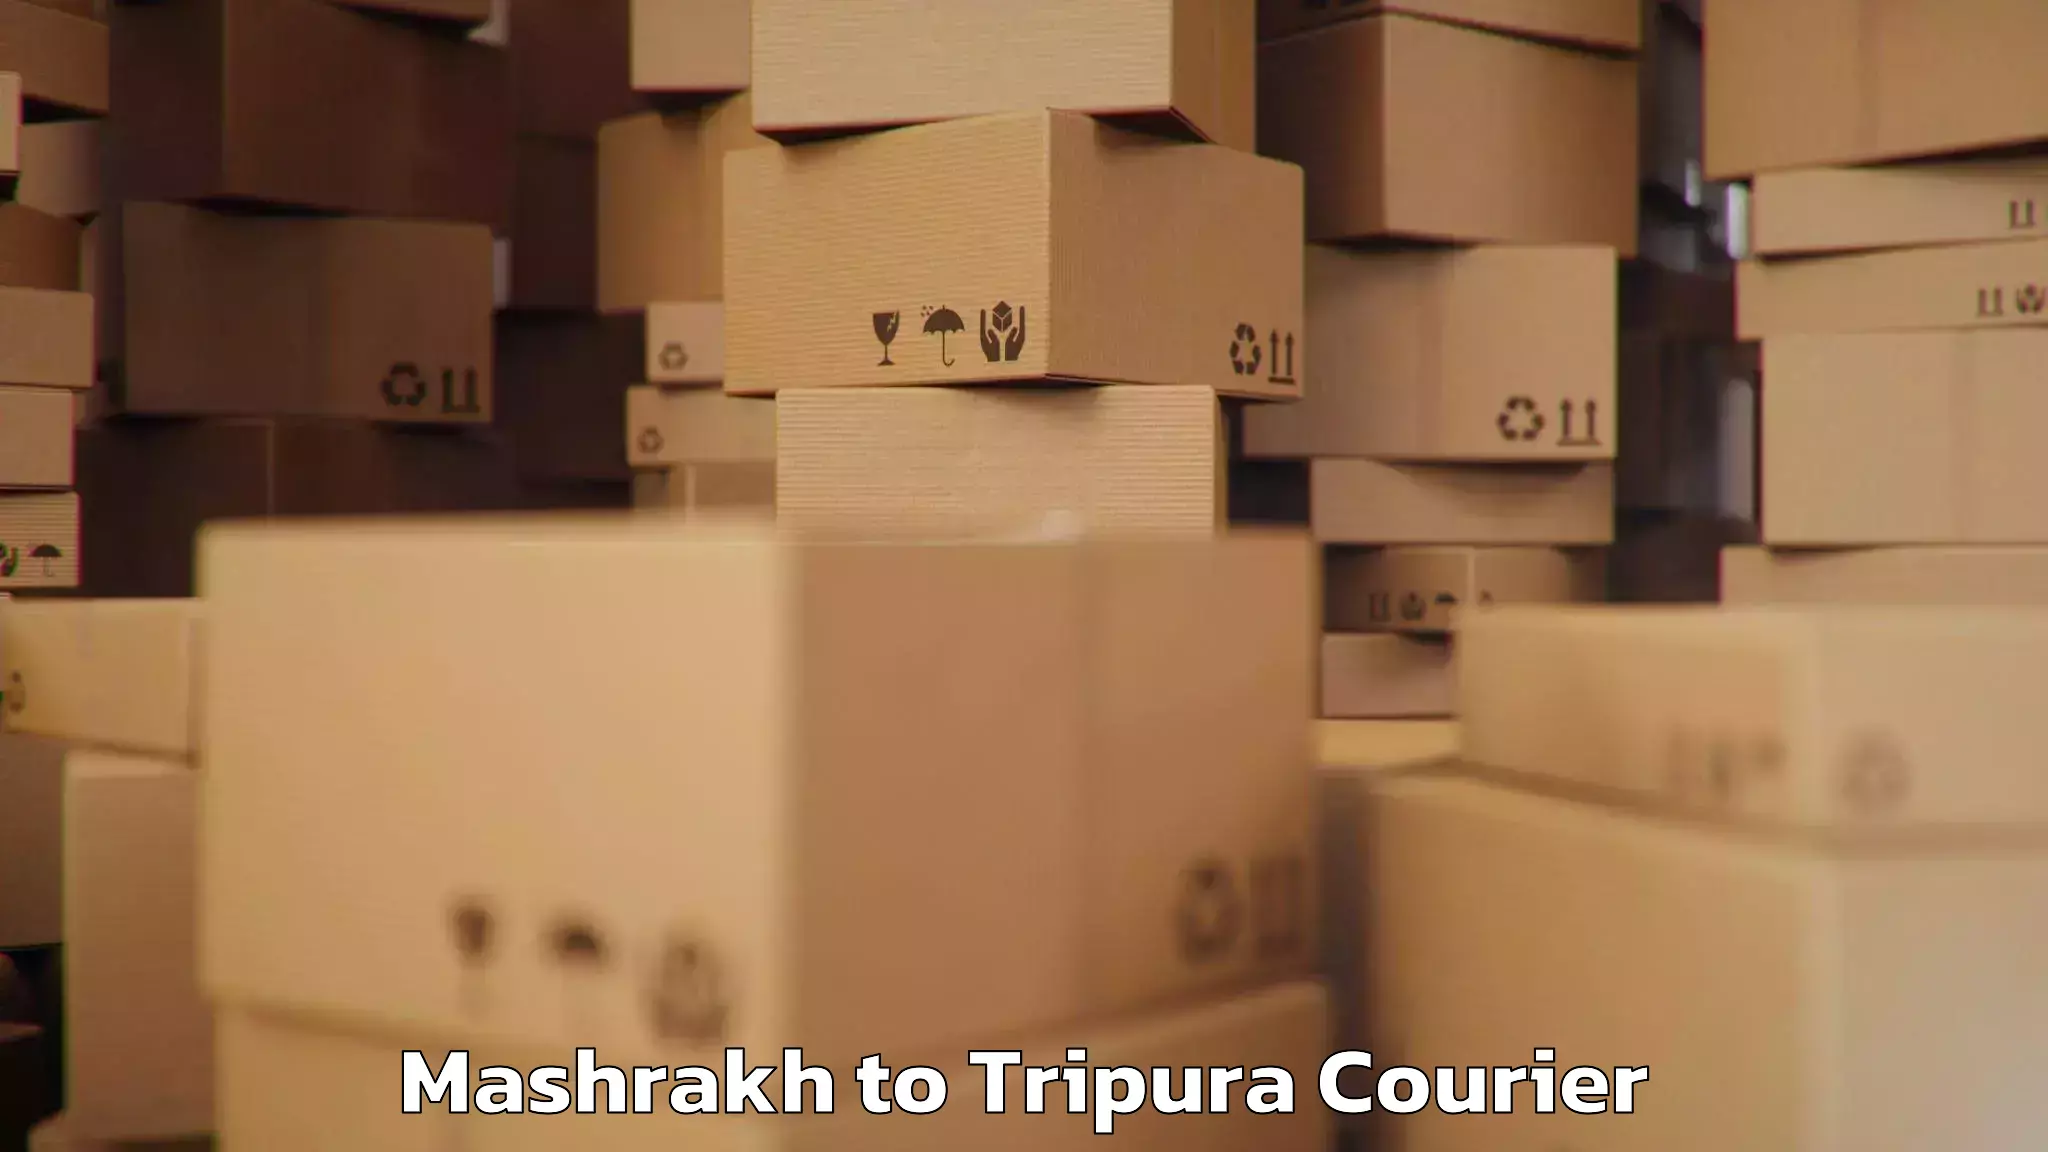 Electronic items luggage shipping Mashrakh to IIIT Agartala